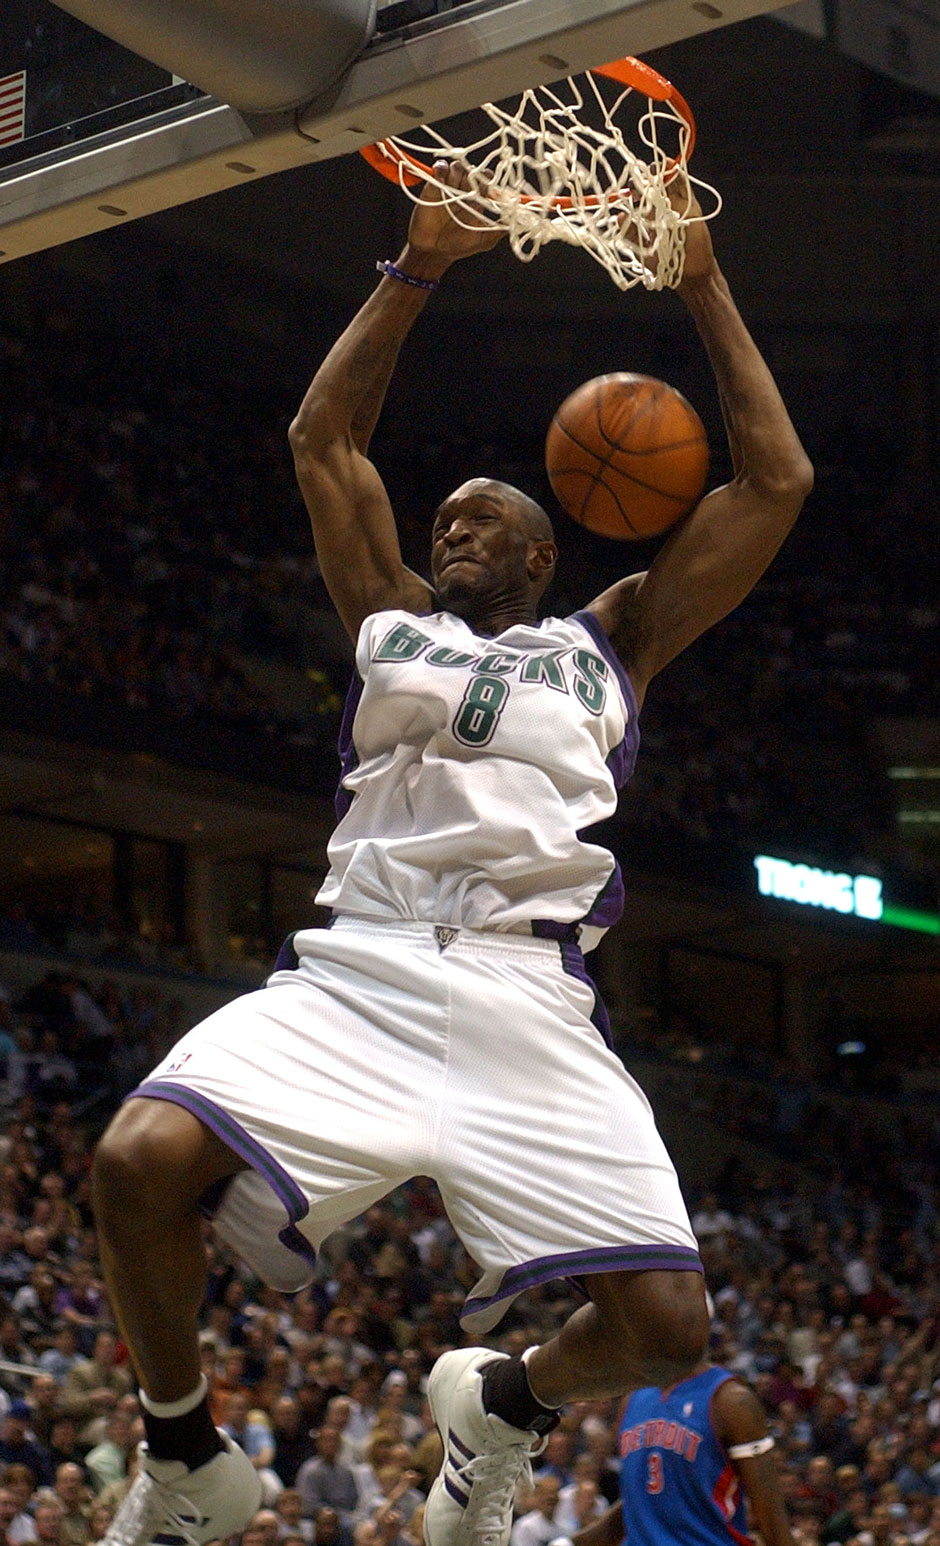 Joe Smith (1995) spielte in 16 Jahren für stolze 12 NBA-Franchises